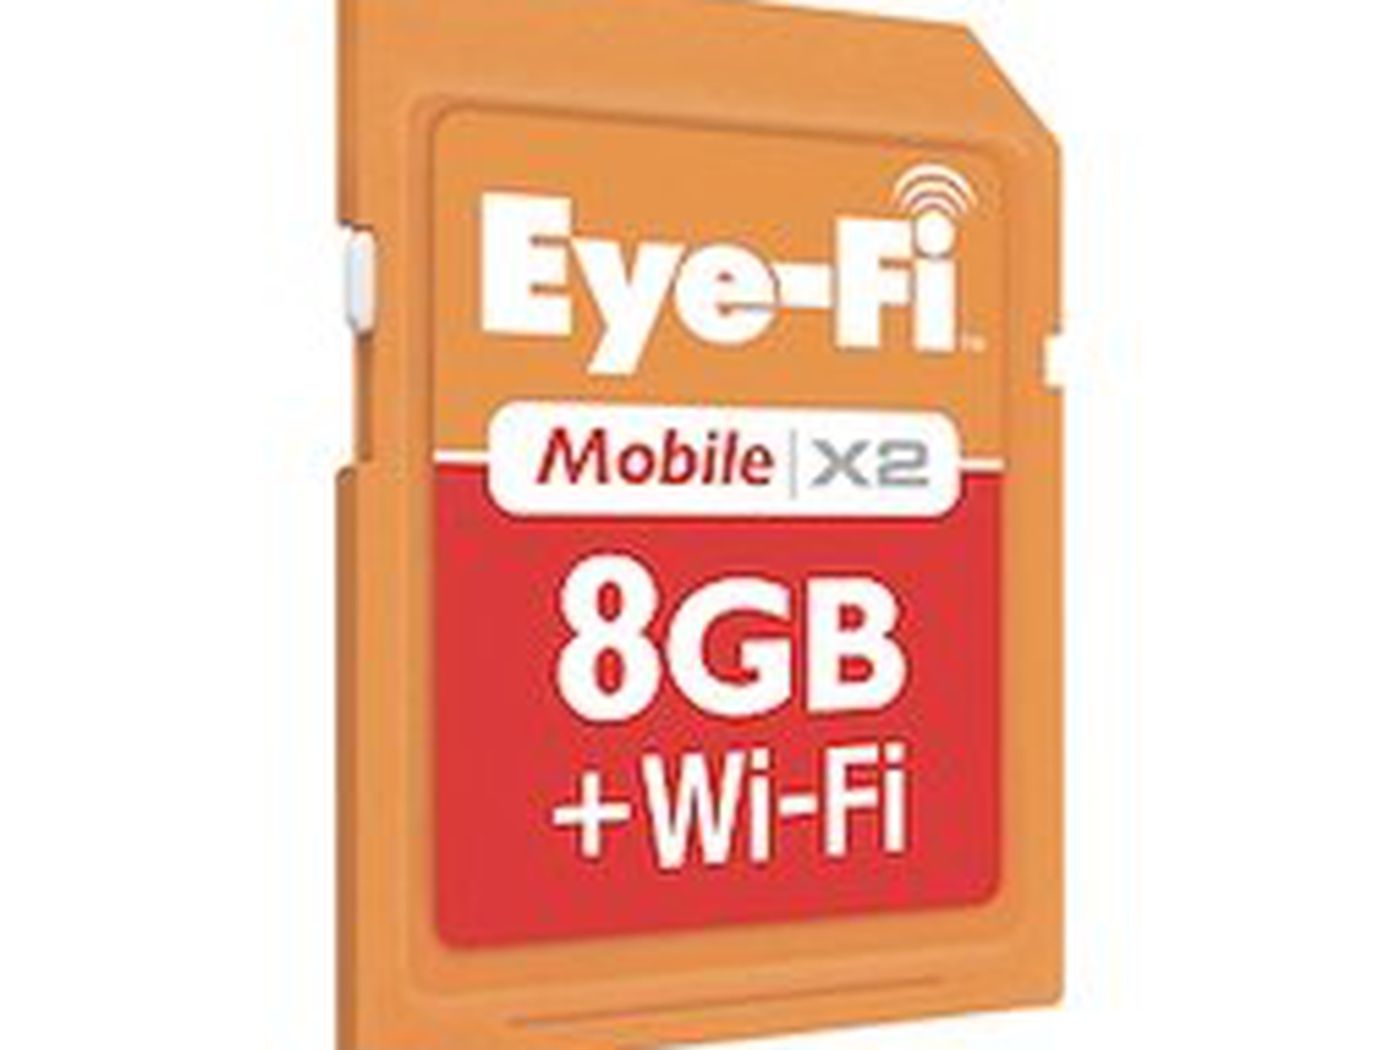 Eye-Fi Share 2 GB Wi-Fi SD Flash Memory Card EYE-FI-2GB Old Version